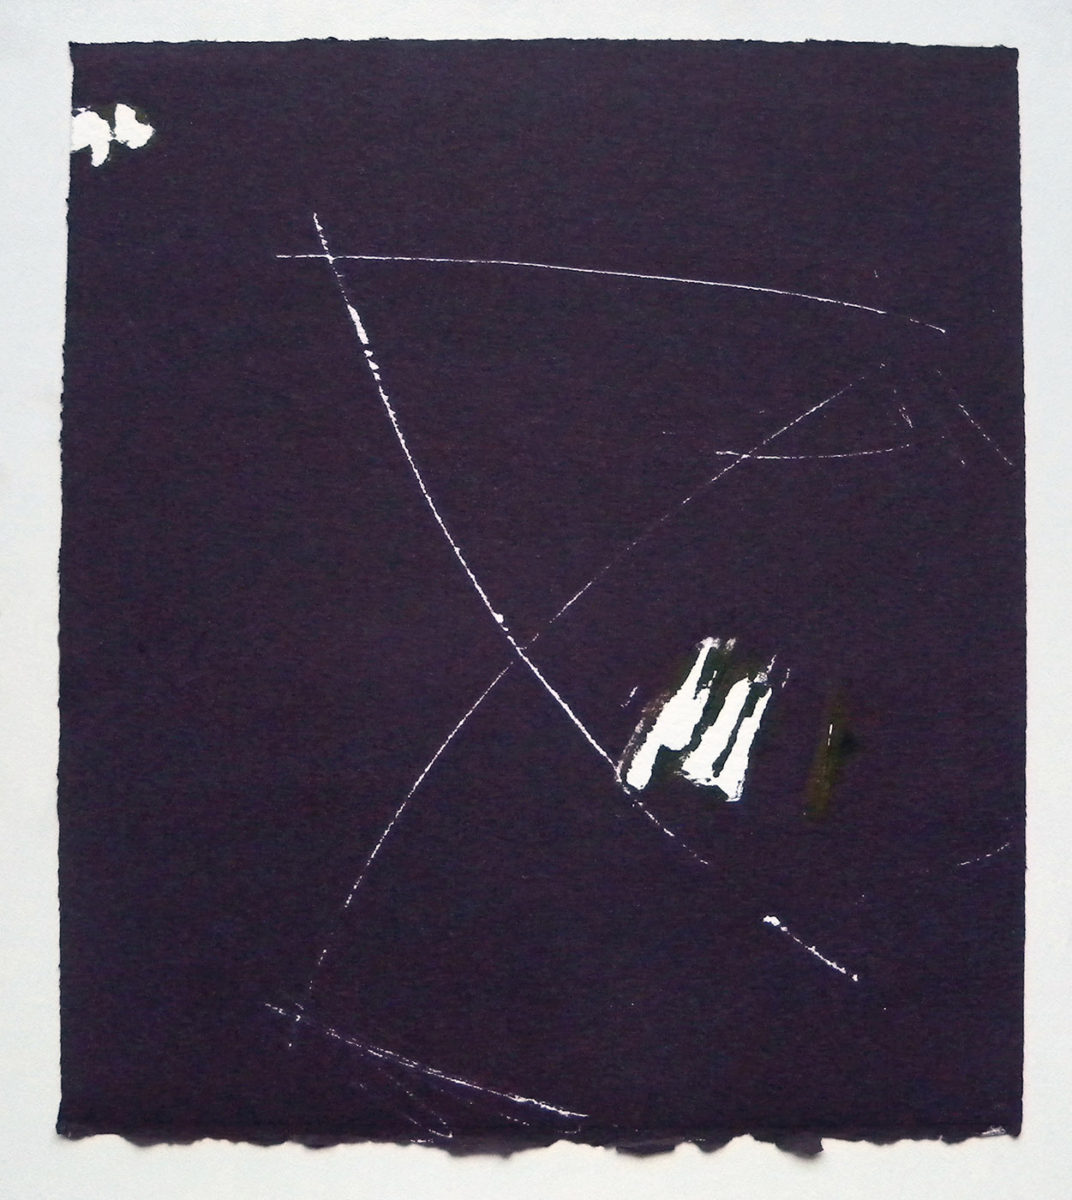 MARC FELD 2012 SONG FOR STEVE LACY 13 Gravure sur bois encre sur papier 25 x 26 cm (Tirage Patrick Vernet)